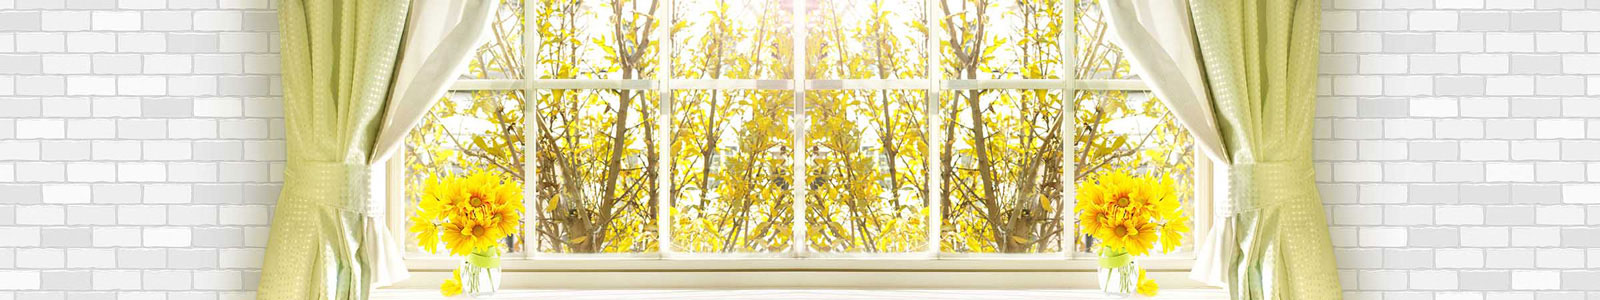 №3548 - Окно с видом на солнечную осень